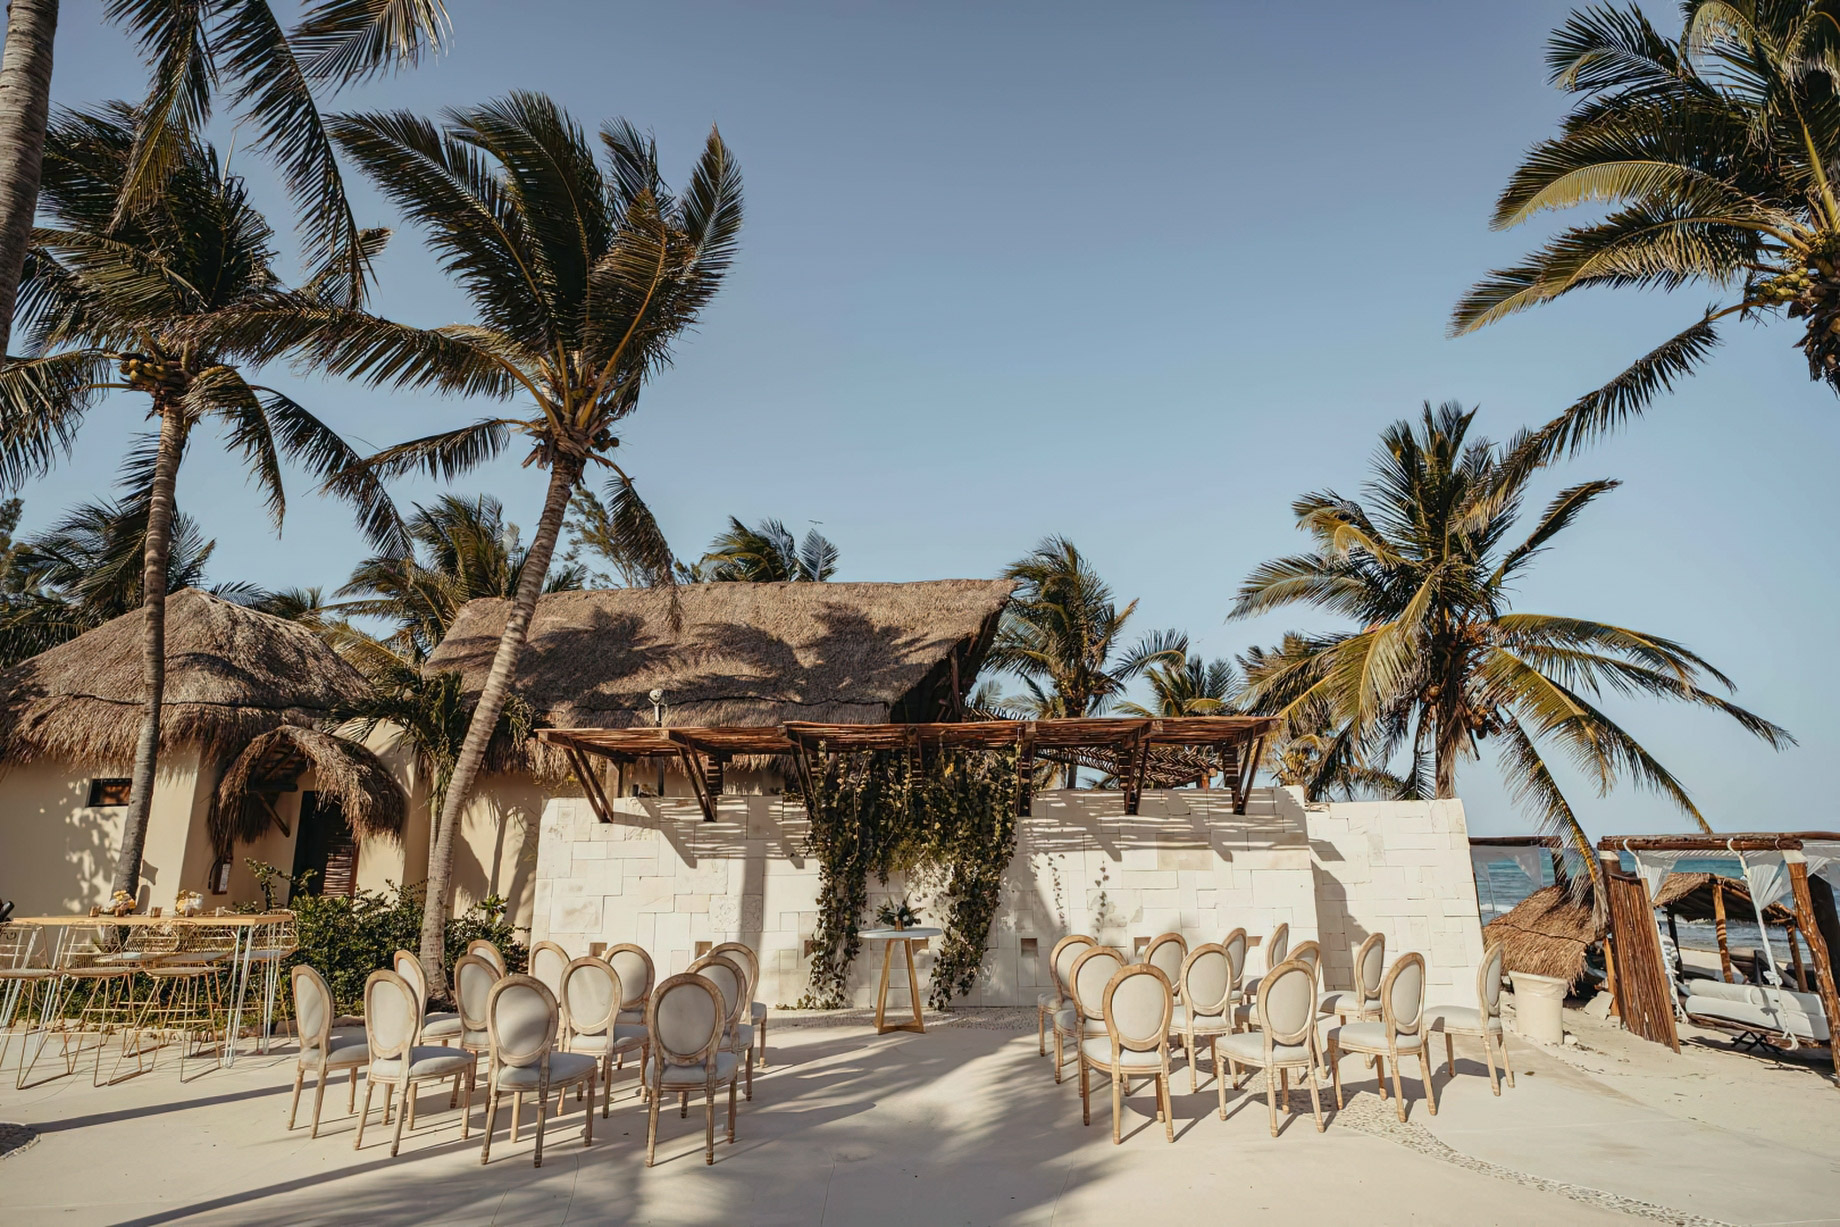 Viceroy Riviera Maya Resort - Playa del Carmen, Mexico - Outdoor Wedding Ceremony